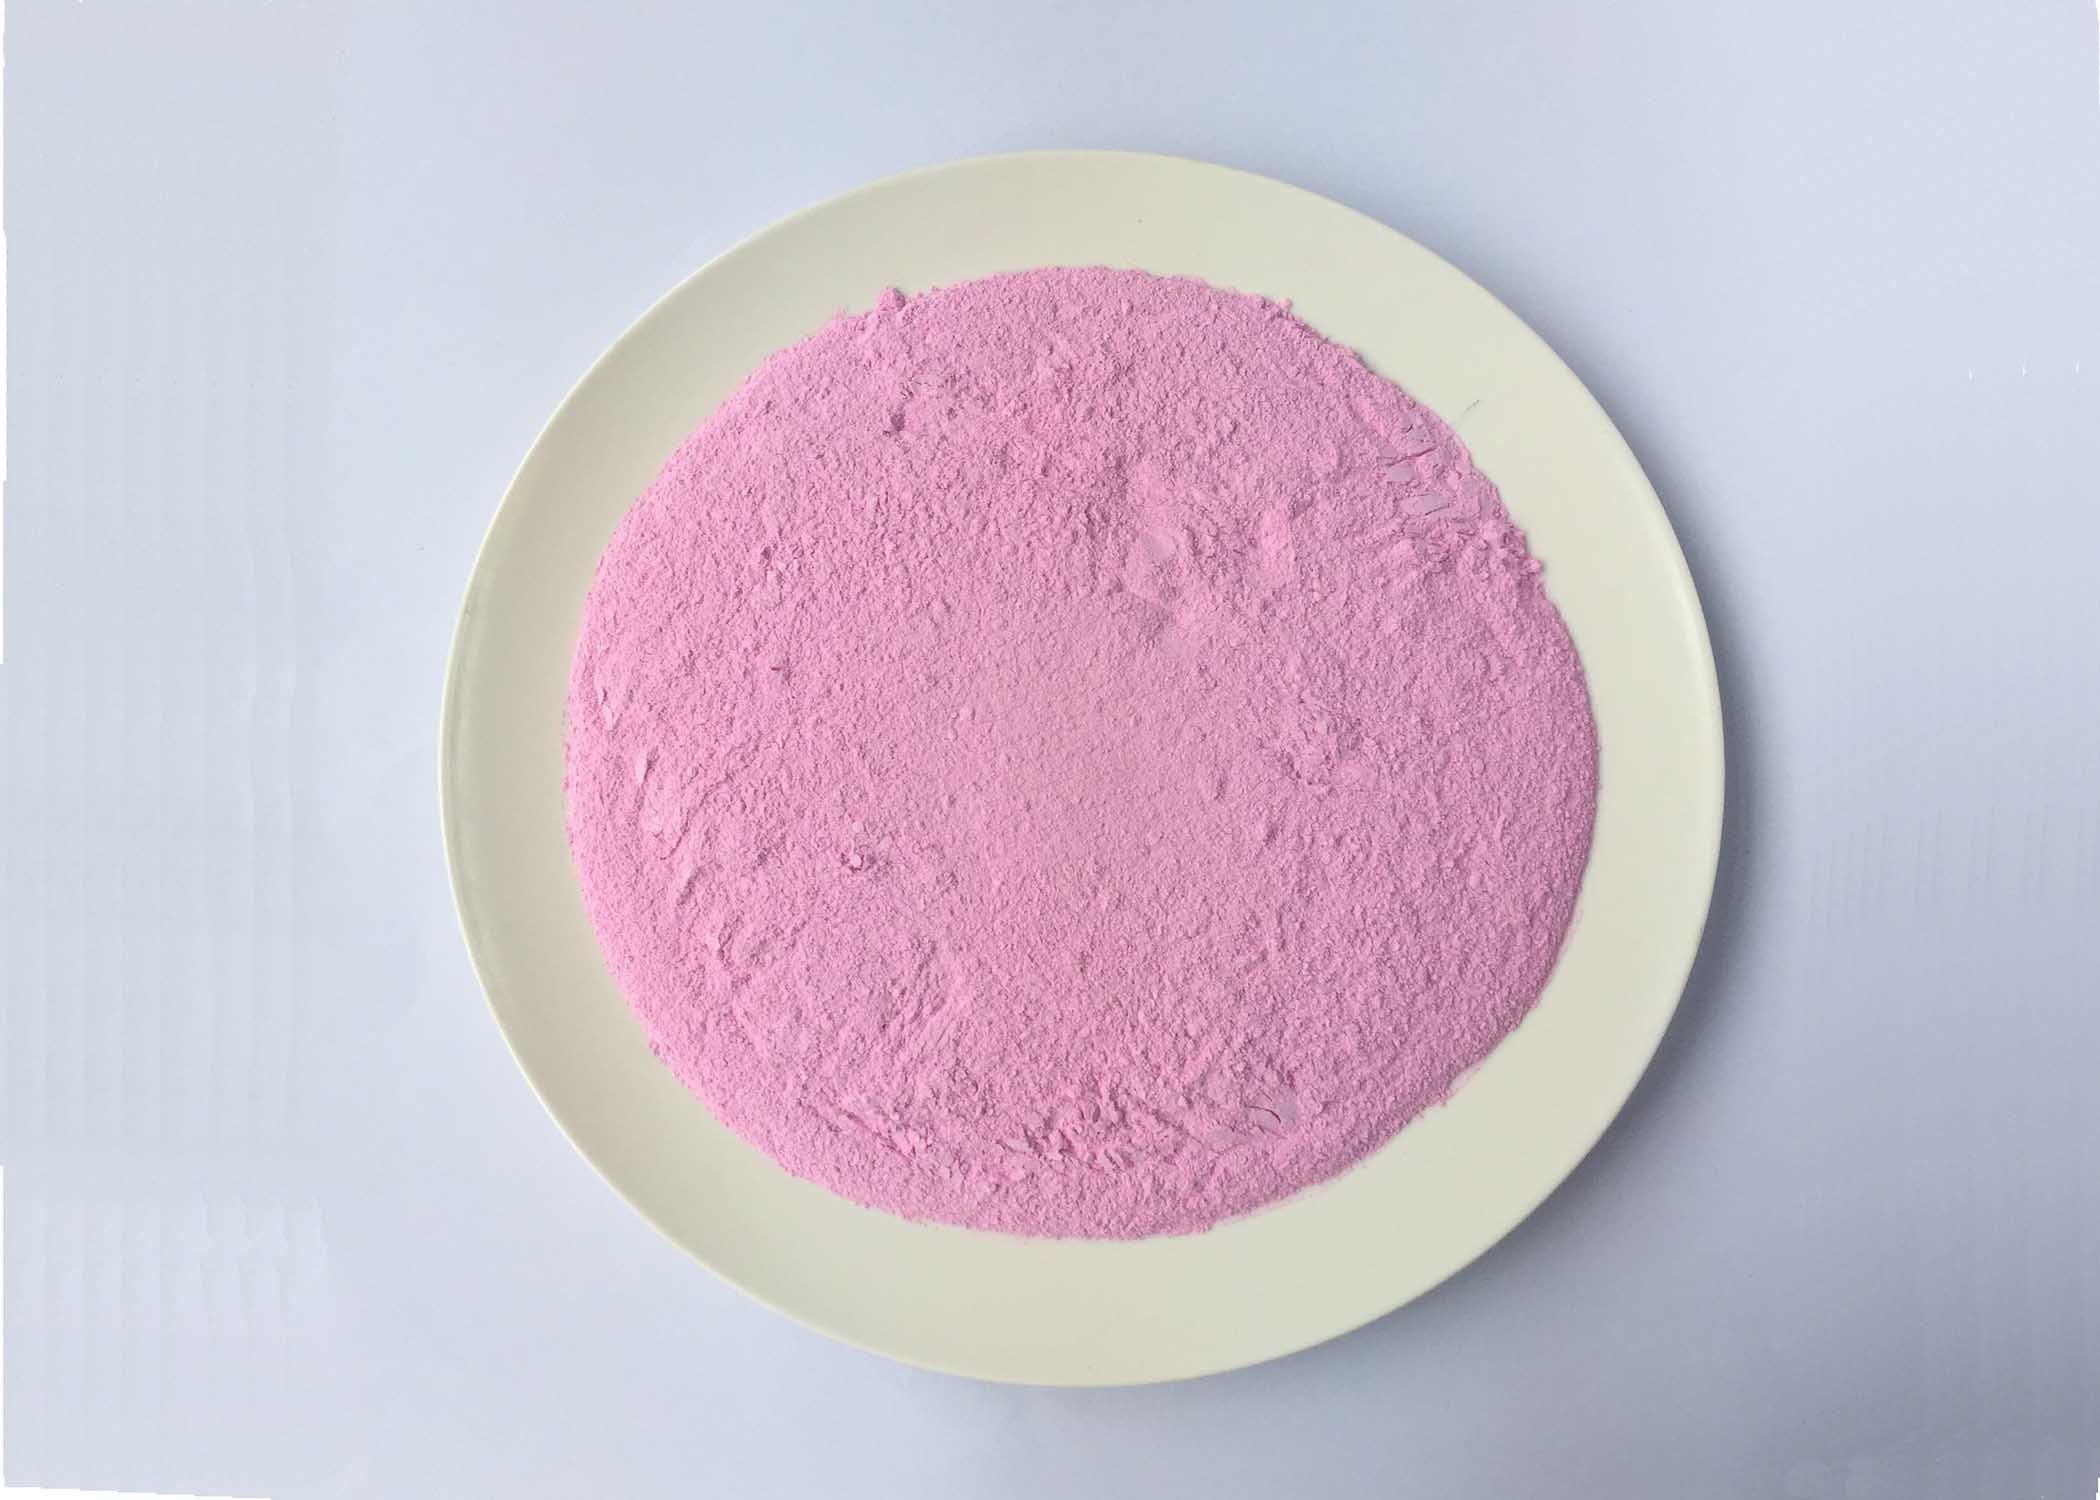 Composto cor-de-rosa do pó da resina de formaldeído de ureia com adição de lubrificante